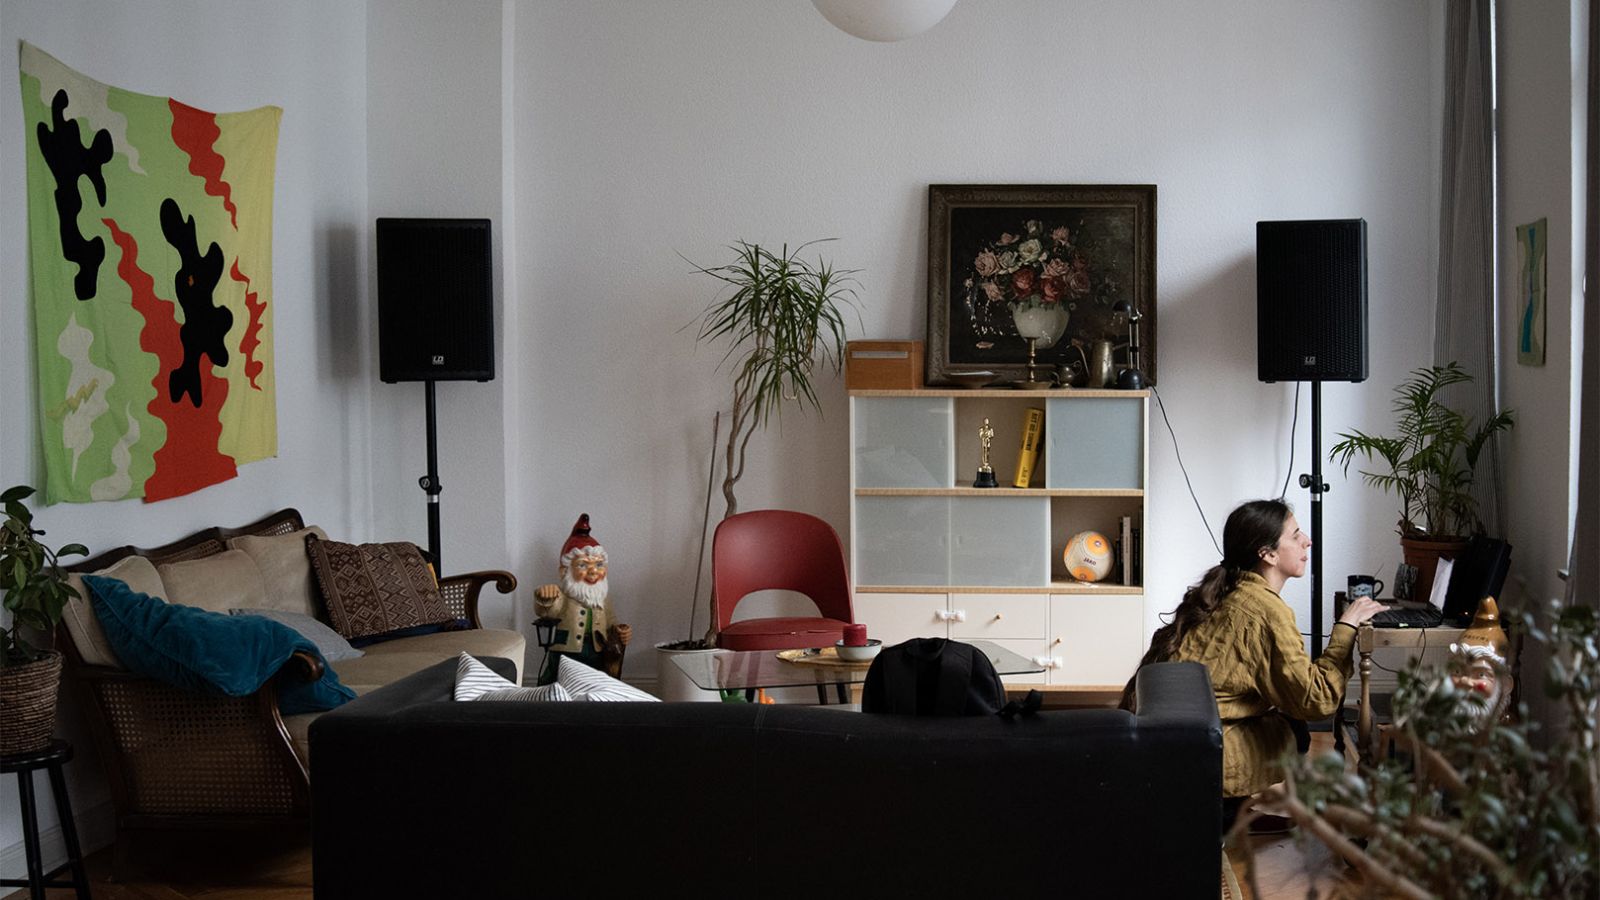 Wohnzimmer. Rechts hockt eine weiße Frau mit braunem Zopf und bedient einen Laptop. Im Hintergrund sieht man eine Kommode, ein Gemälde, eine Pflanze und Musikboxen. Links an der Wand hängt eine buntes Tuch über einem Sofa.